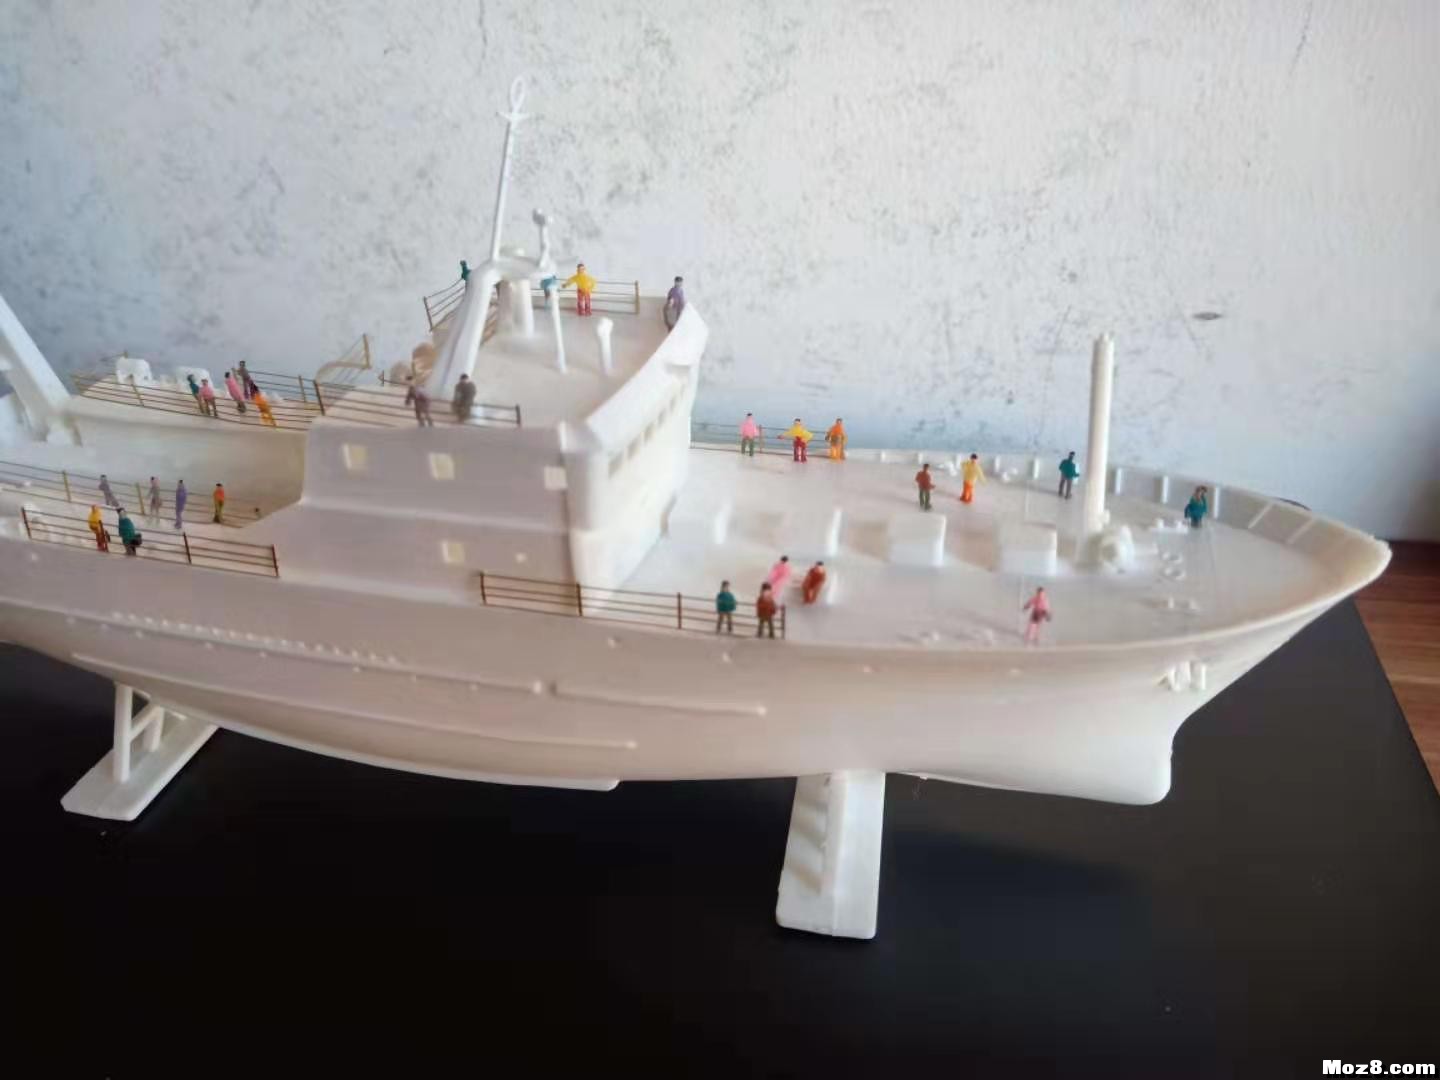 1/200模型船 手工轮船模型,轮船的模型 作者:沙发上的土豆 3158 